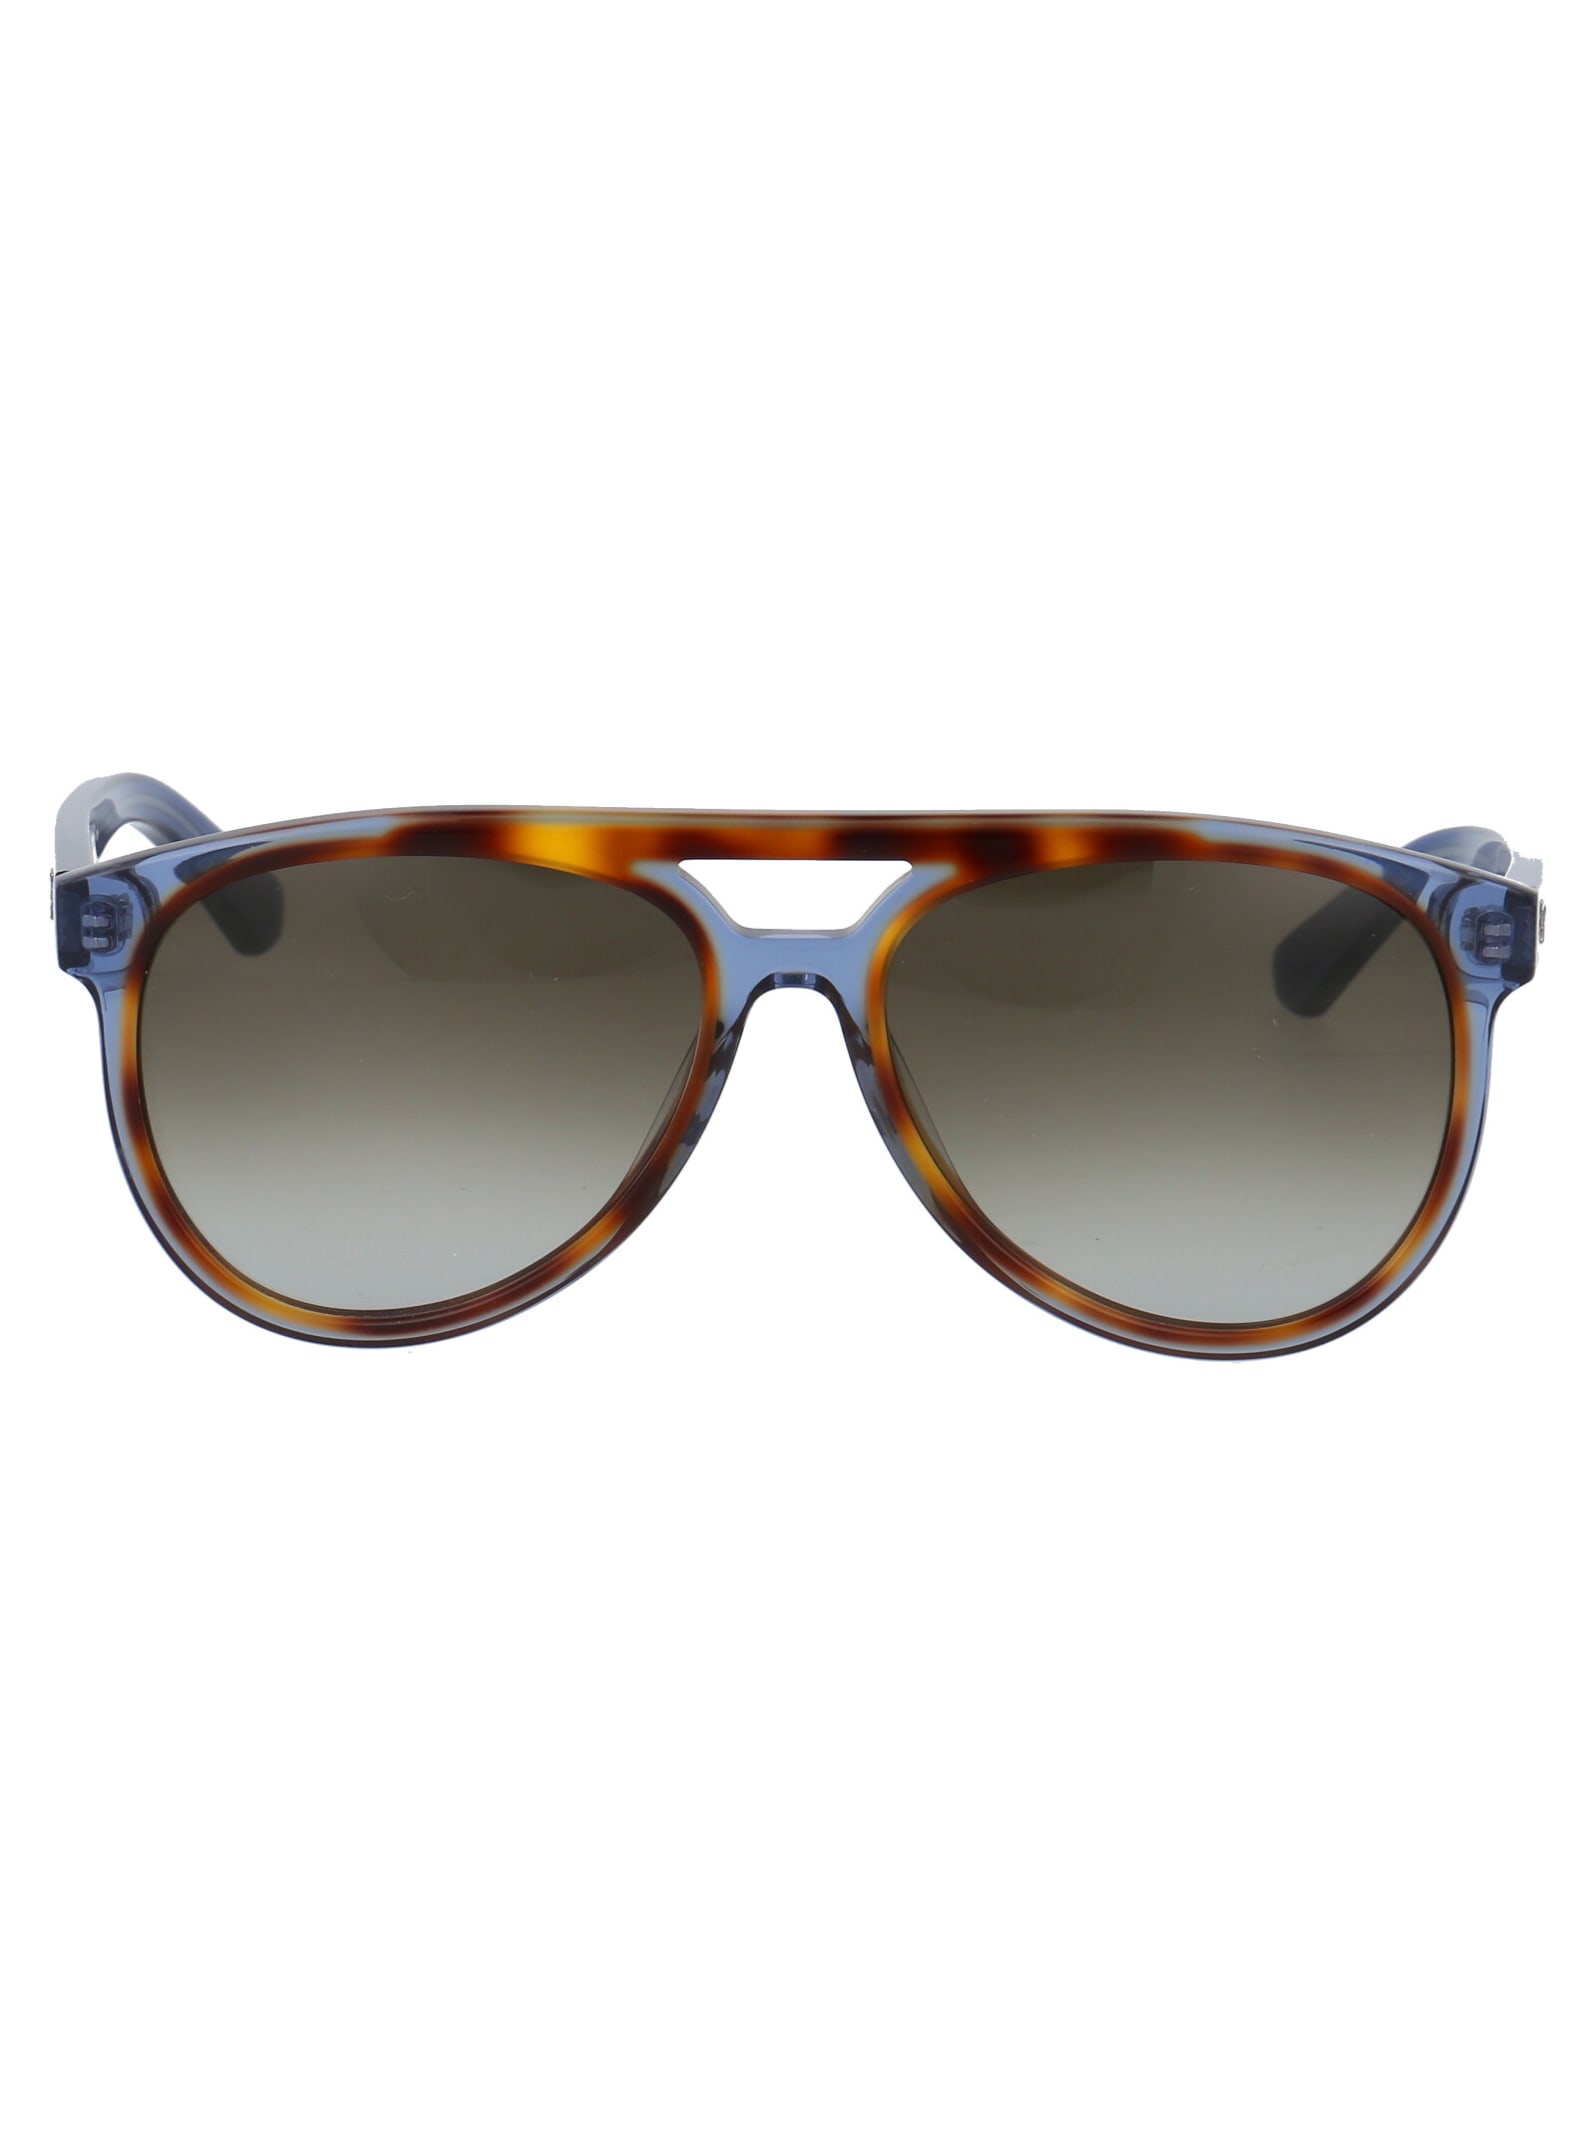 Ferragamo Sf945s Sunglasses In 259 Havana/blue